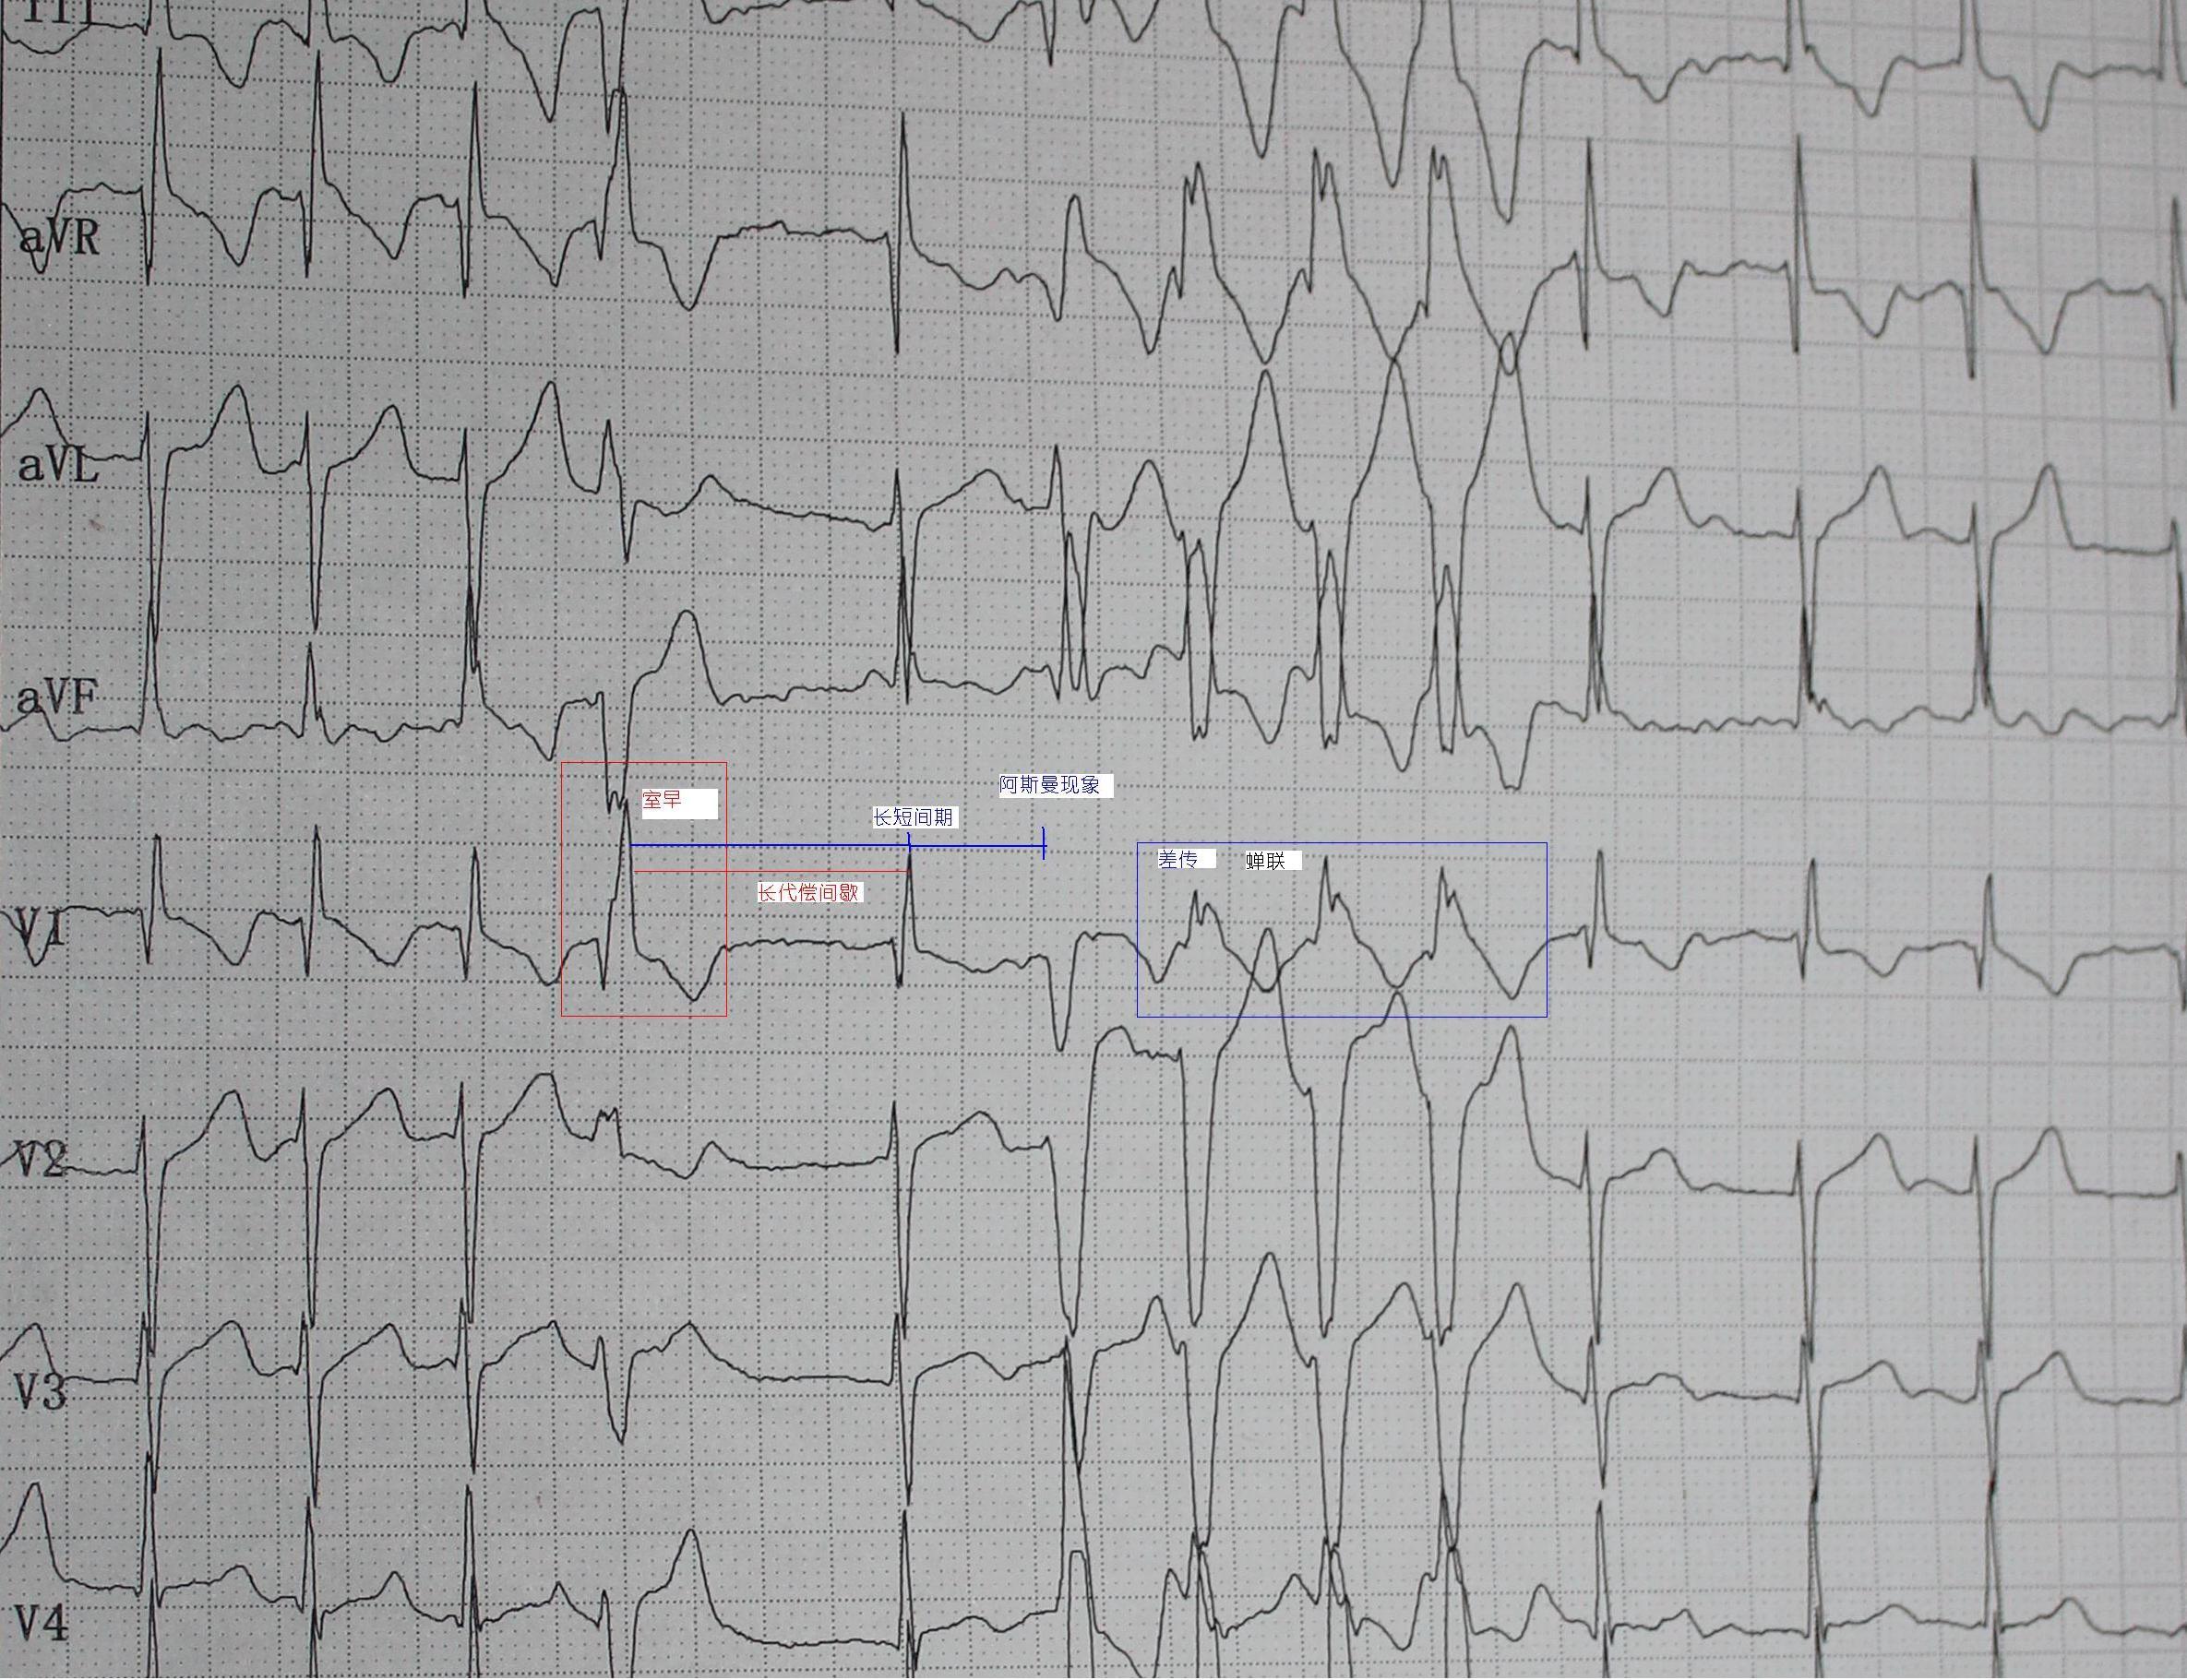 1,快速心房纤颤伴差传 2,室早 3,不完全性右束支传导阻滞 4,st-t